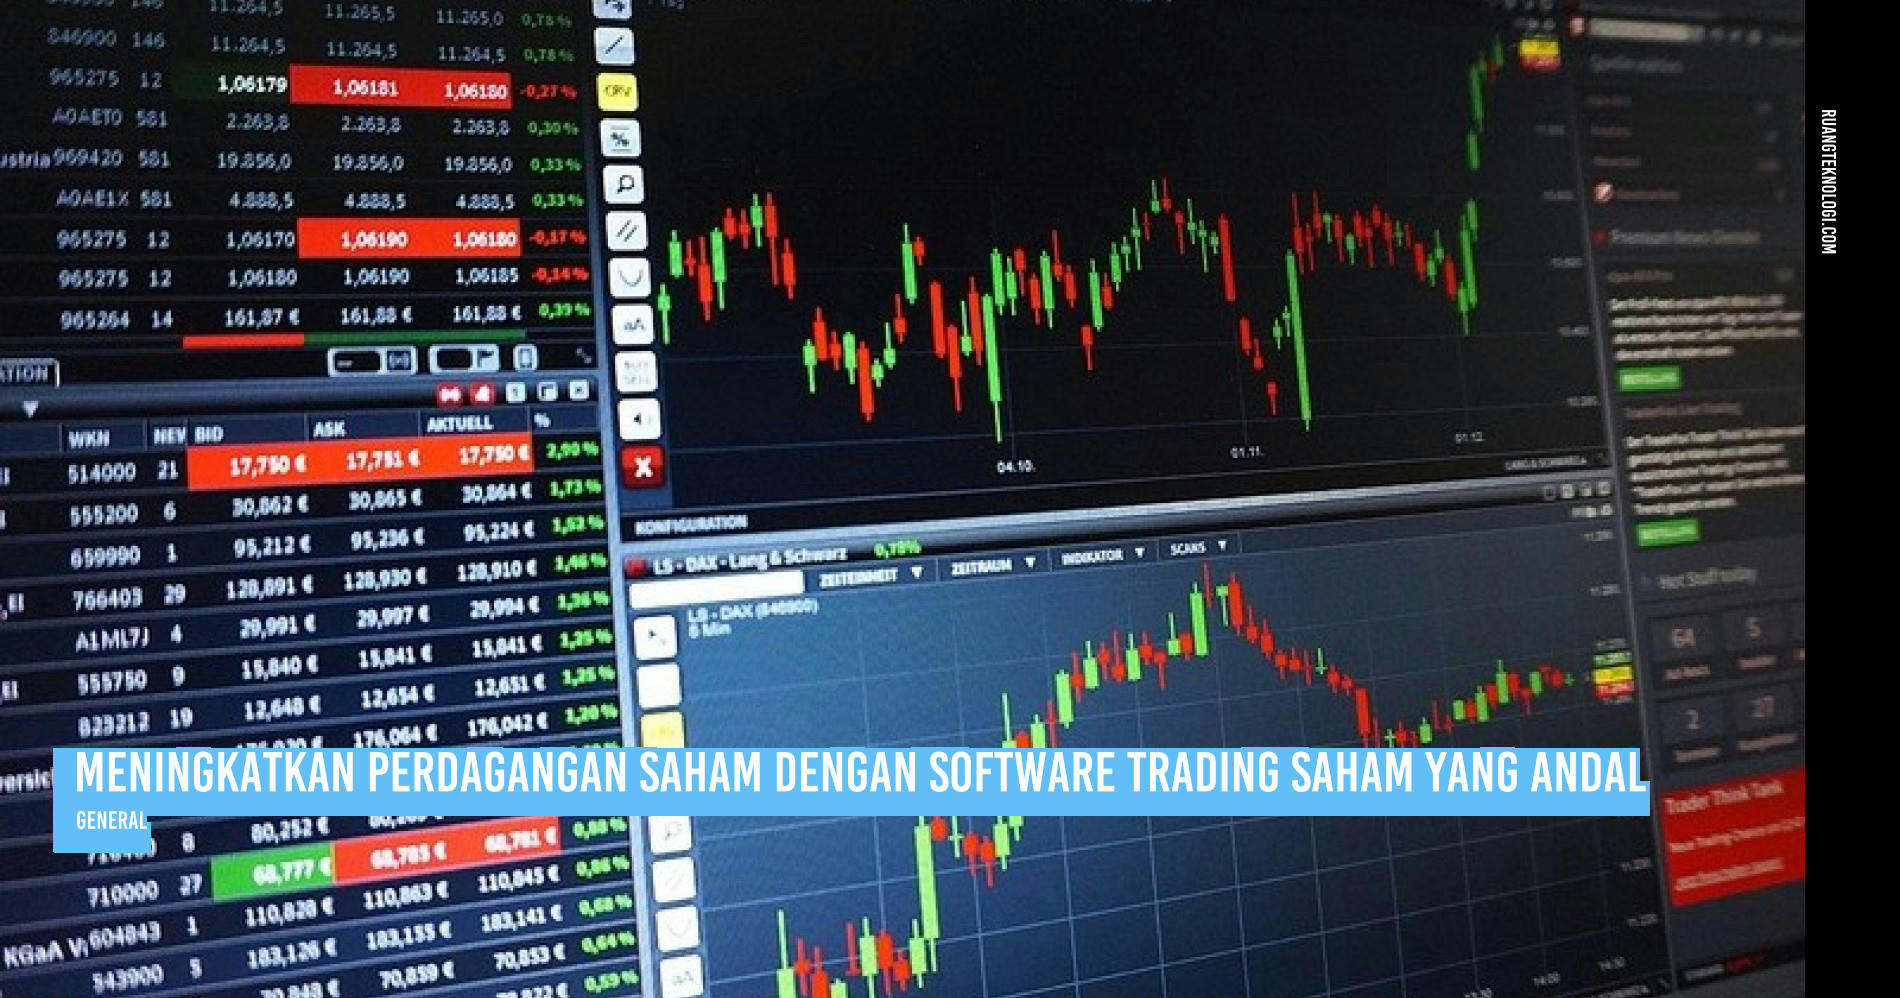 Software Trading Saham Tertaut dengan Analisis Teknis